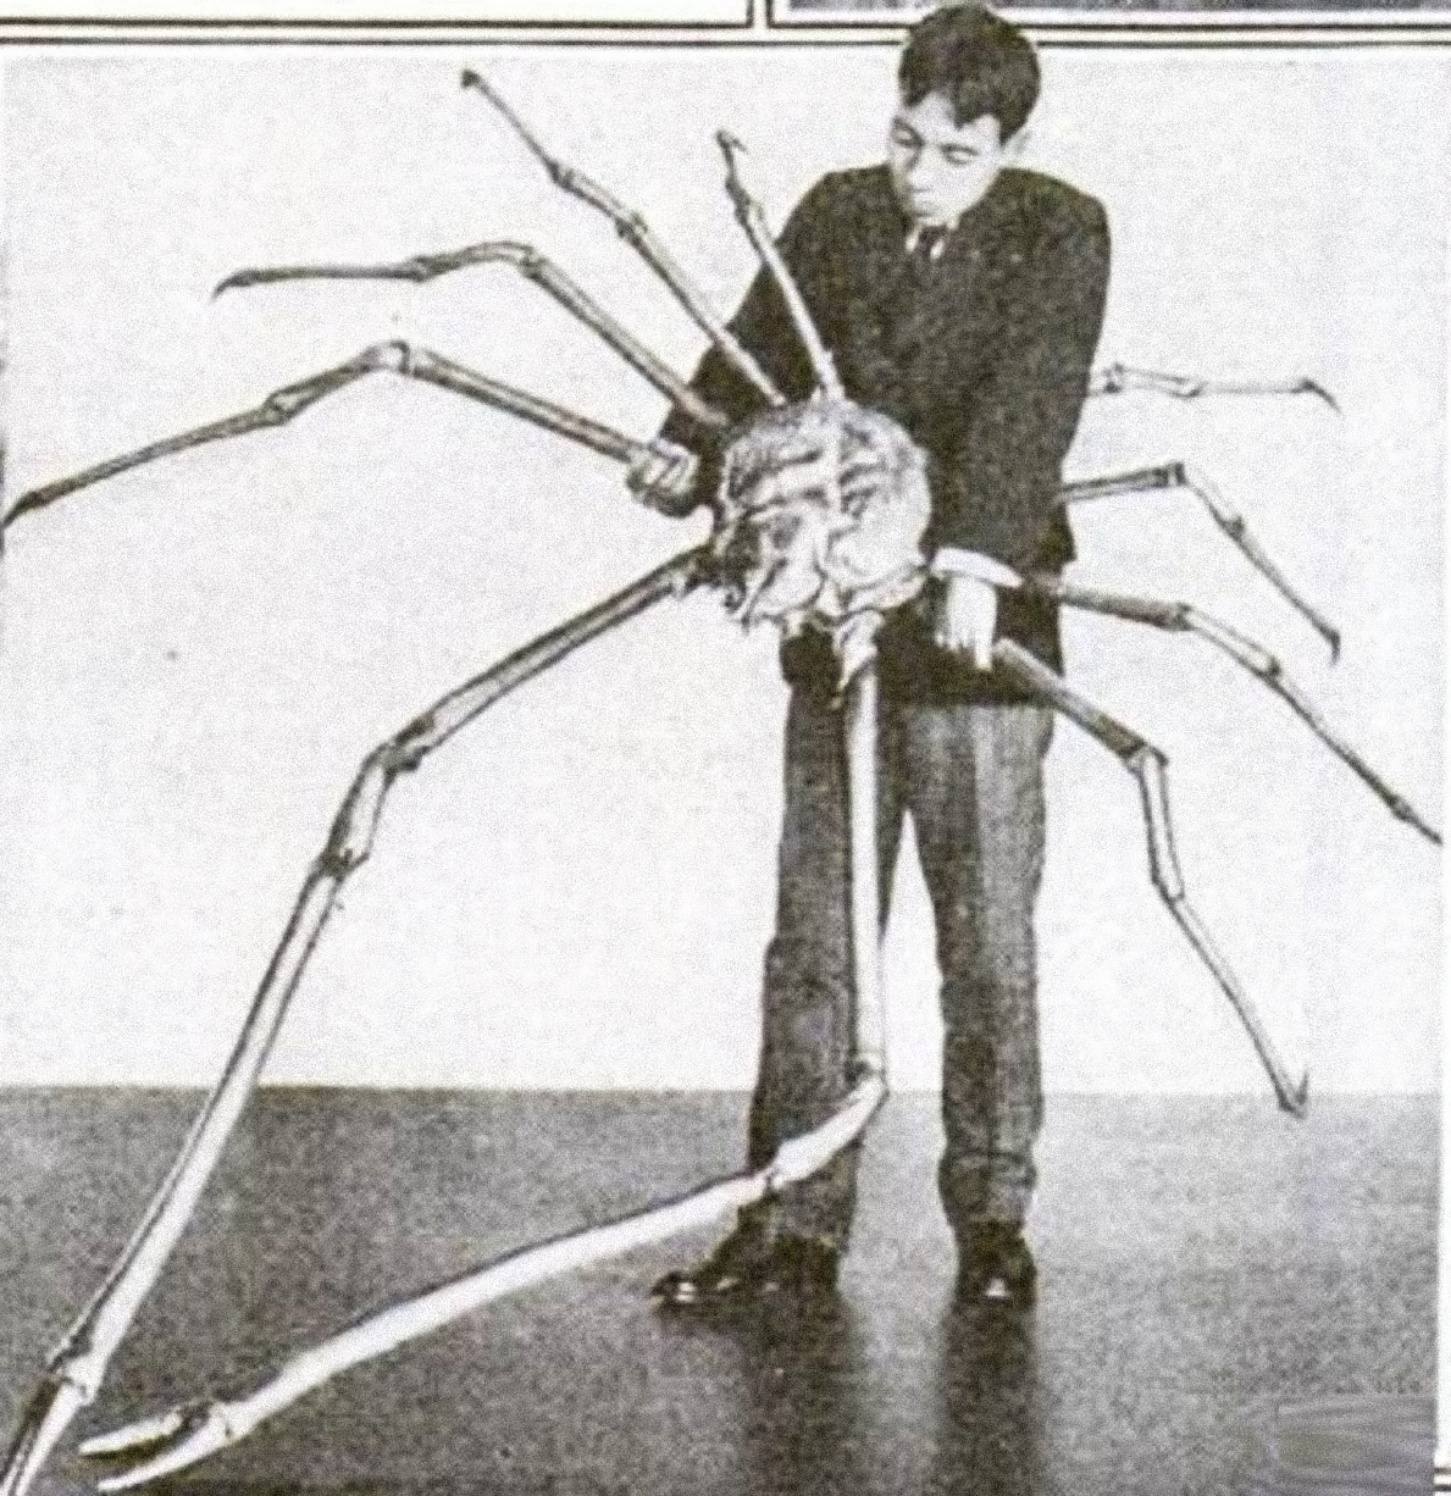 Egy japán pókrák, akinek kinyújtott lábai átmérője 3.7 m (12 láb).